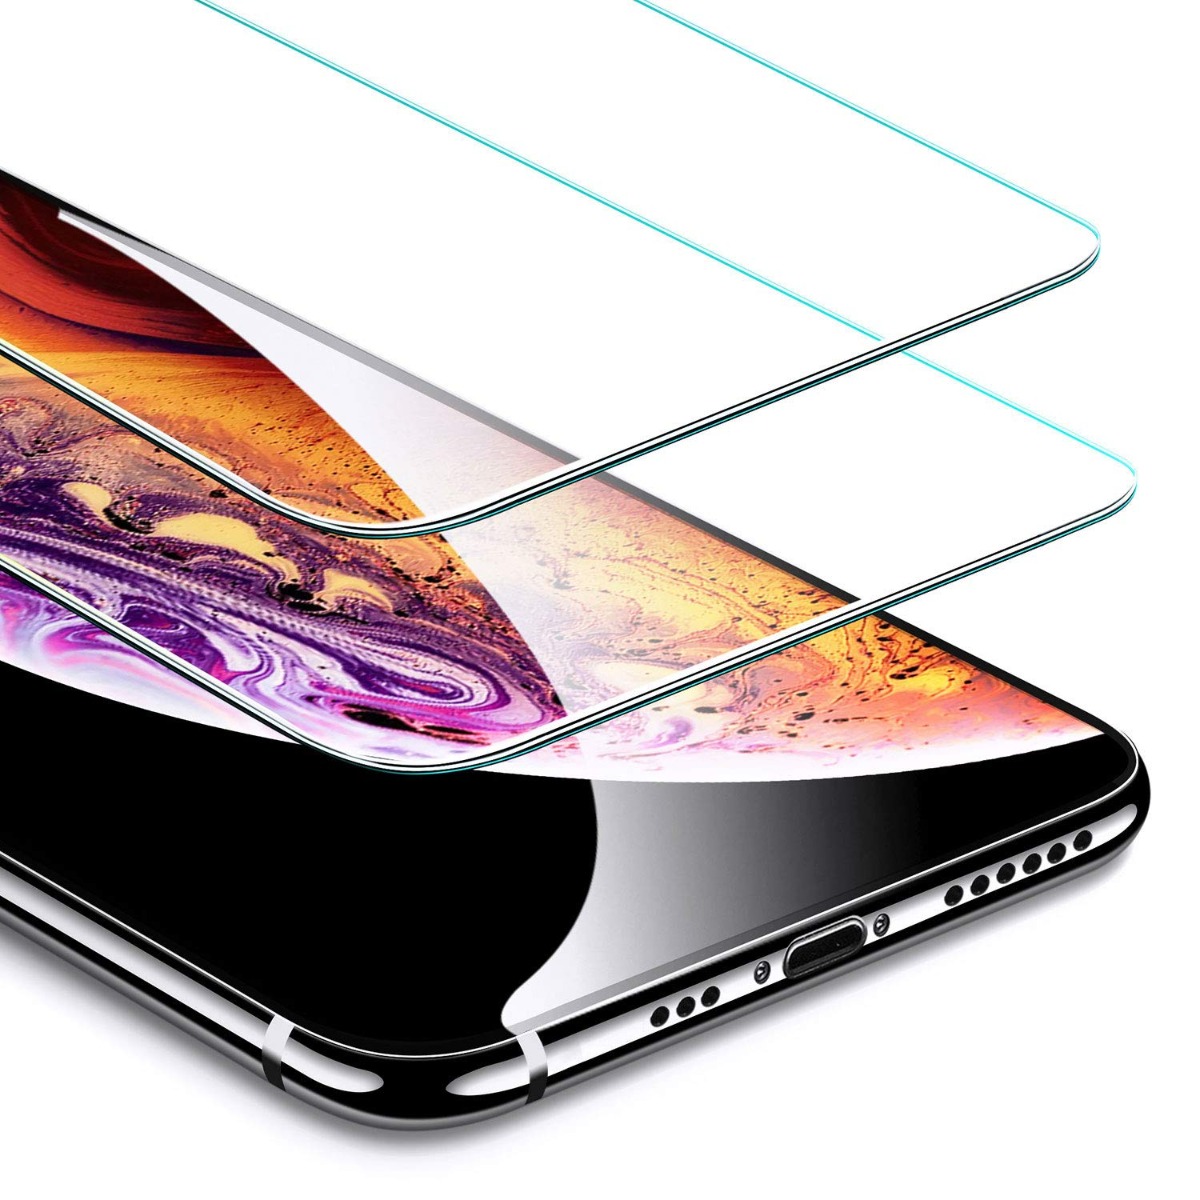 Folie sticla iPhone X, Vetter 0.3mm thumb